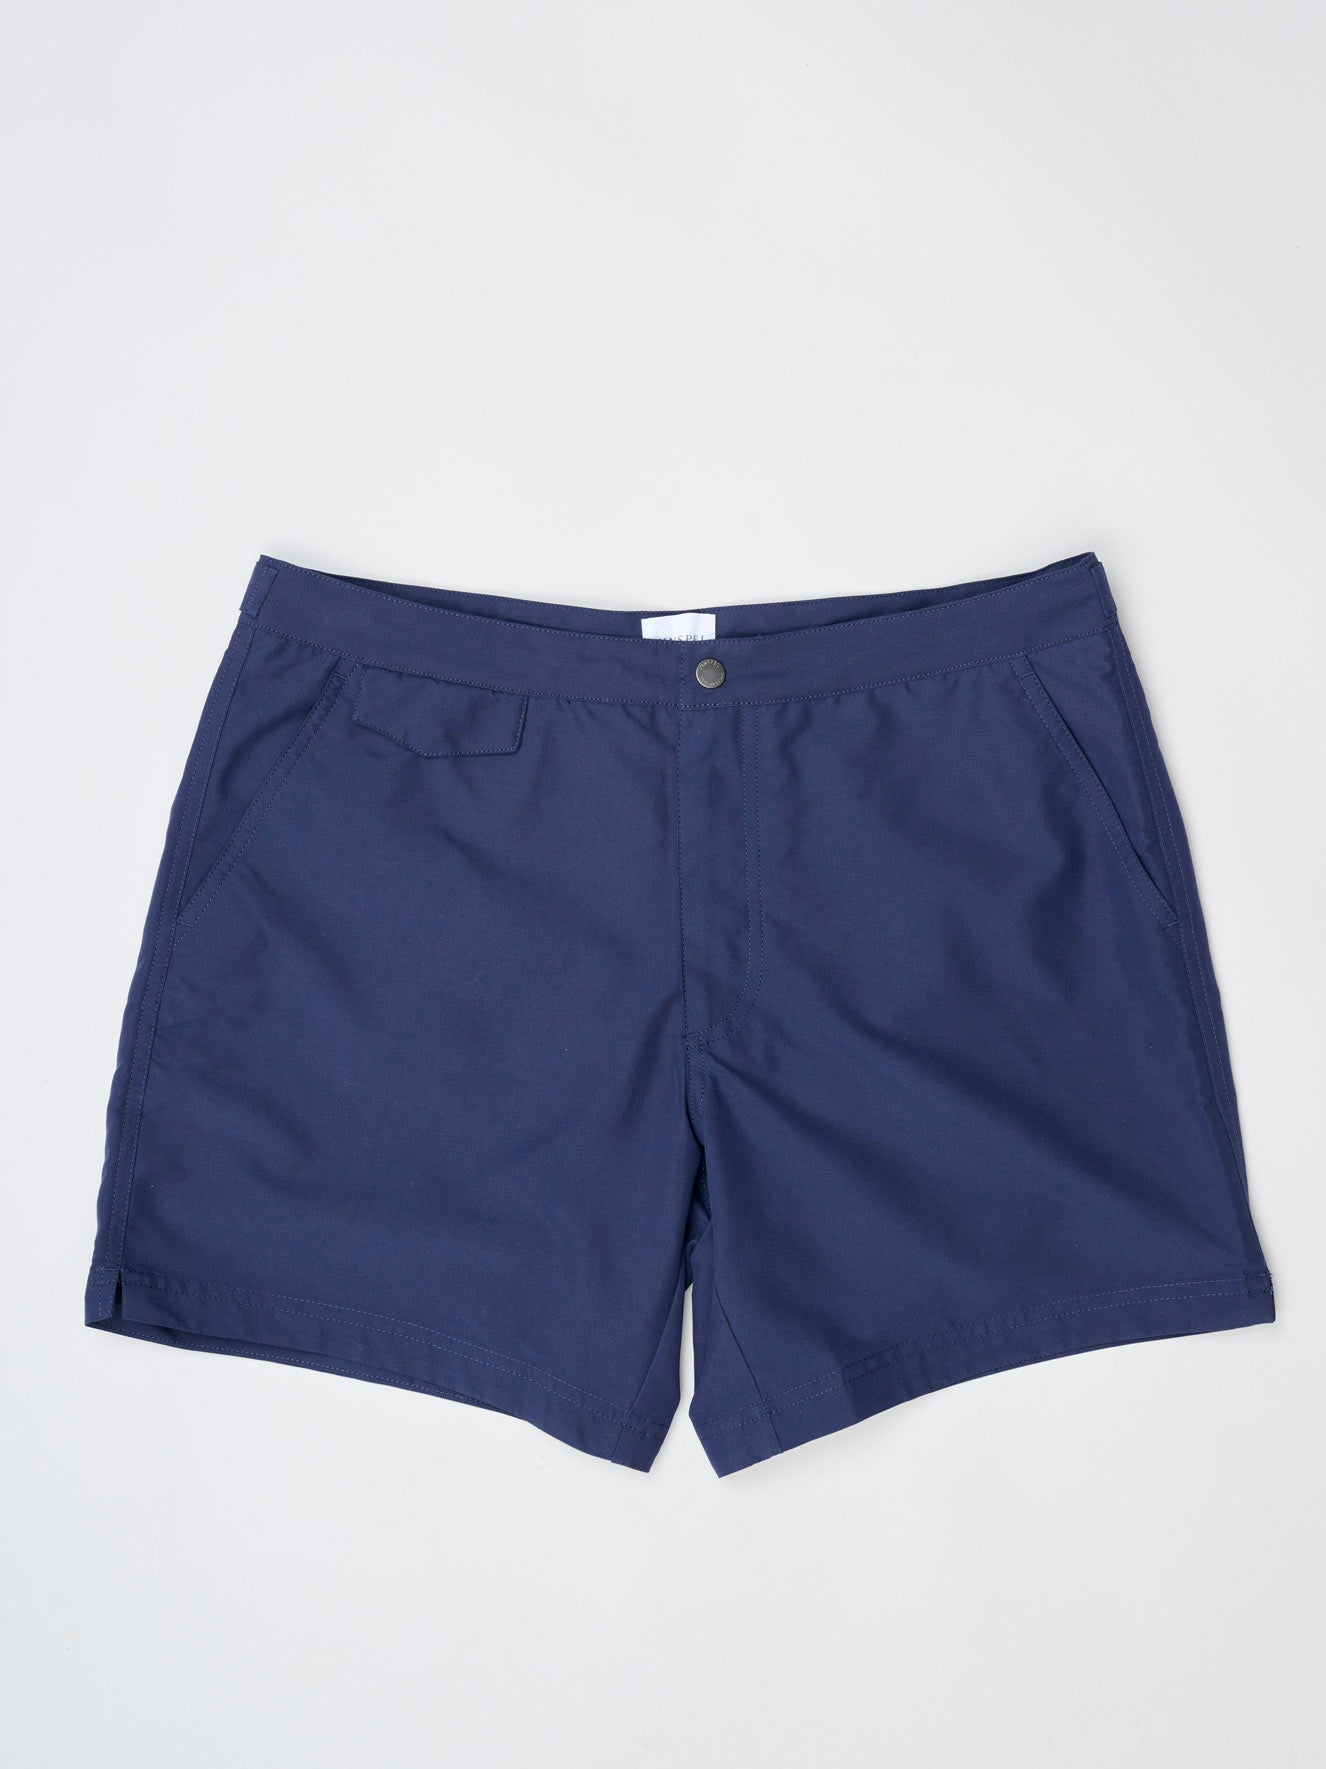 Tailored Swim Shorts, Navy